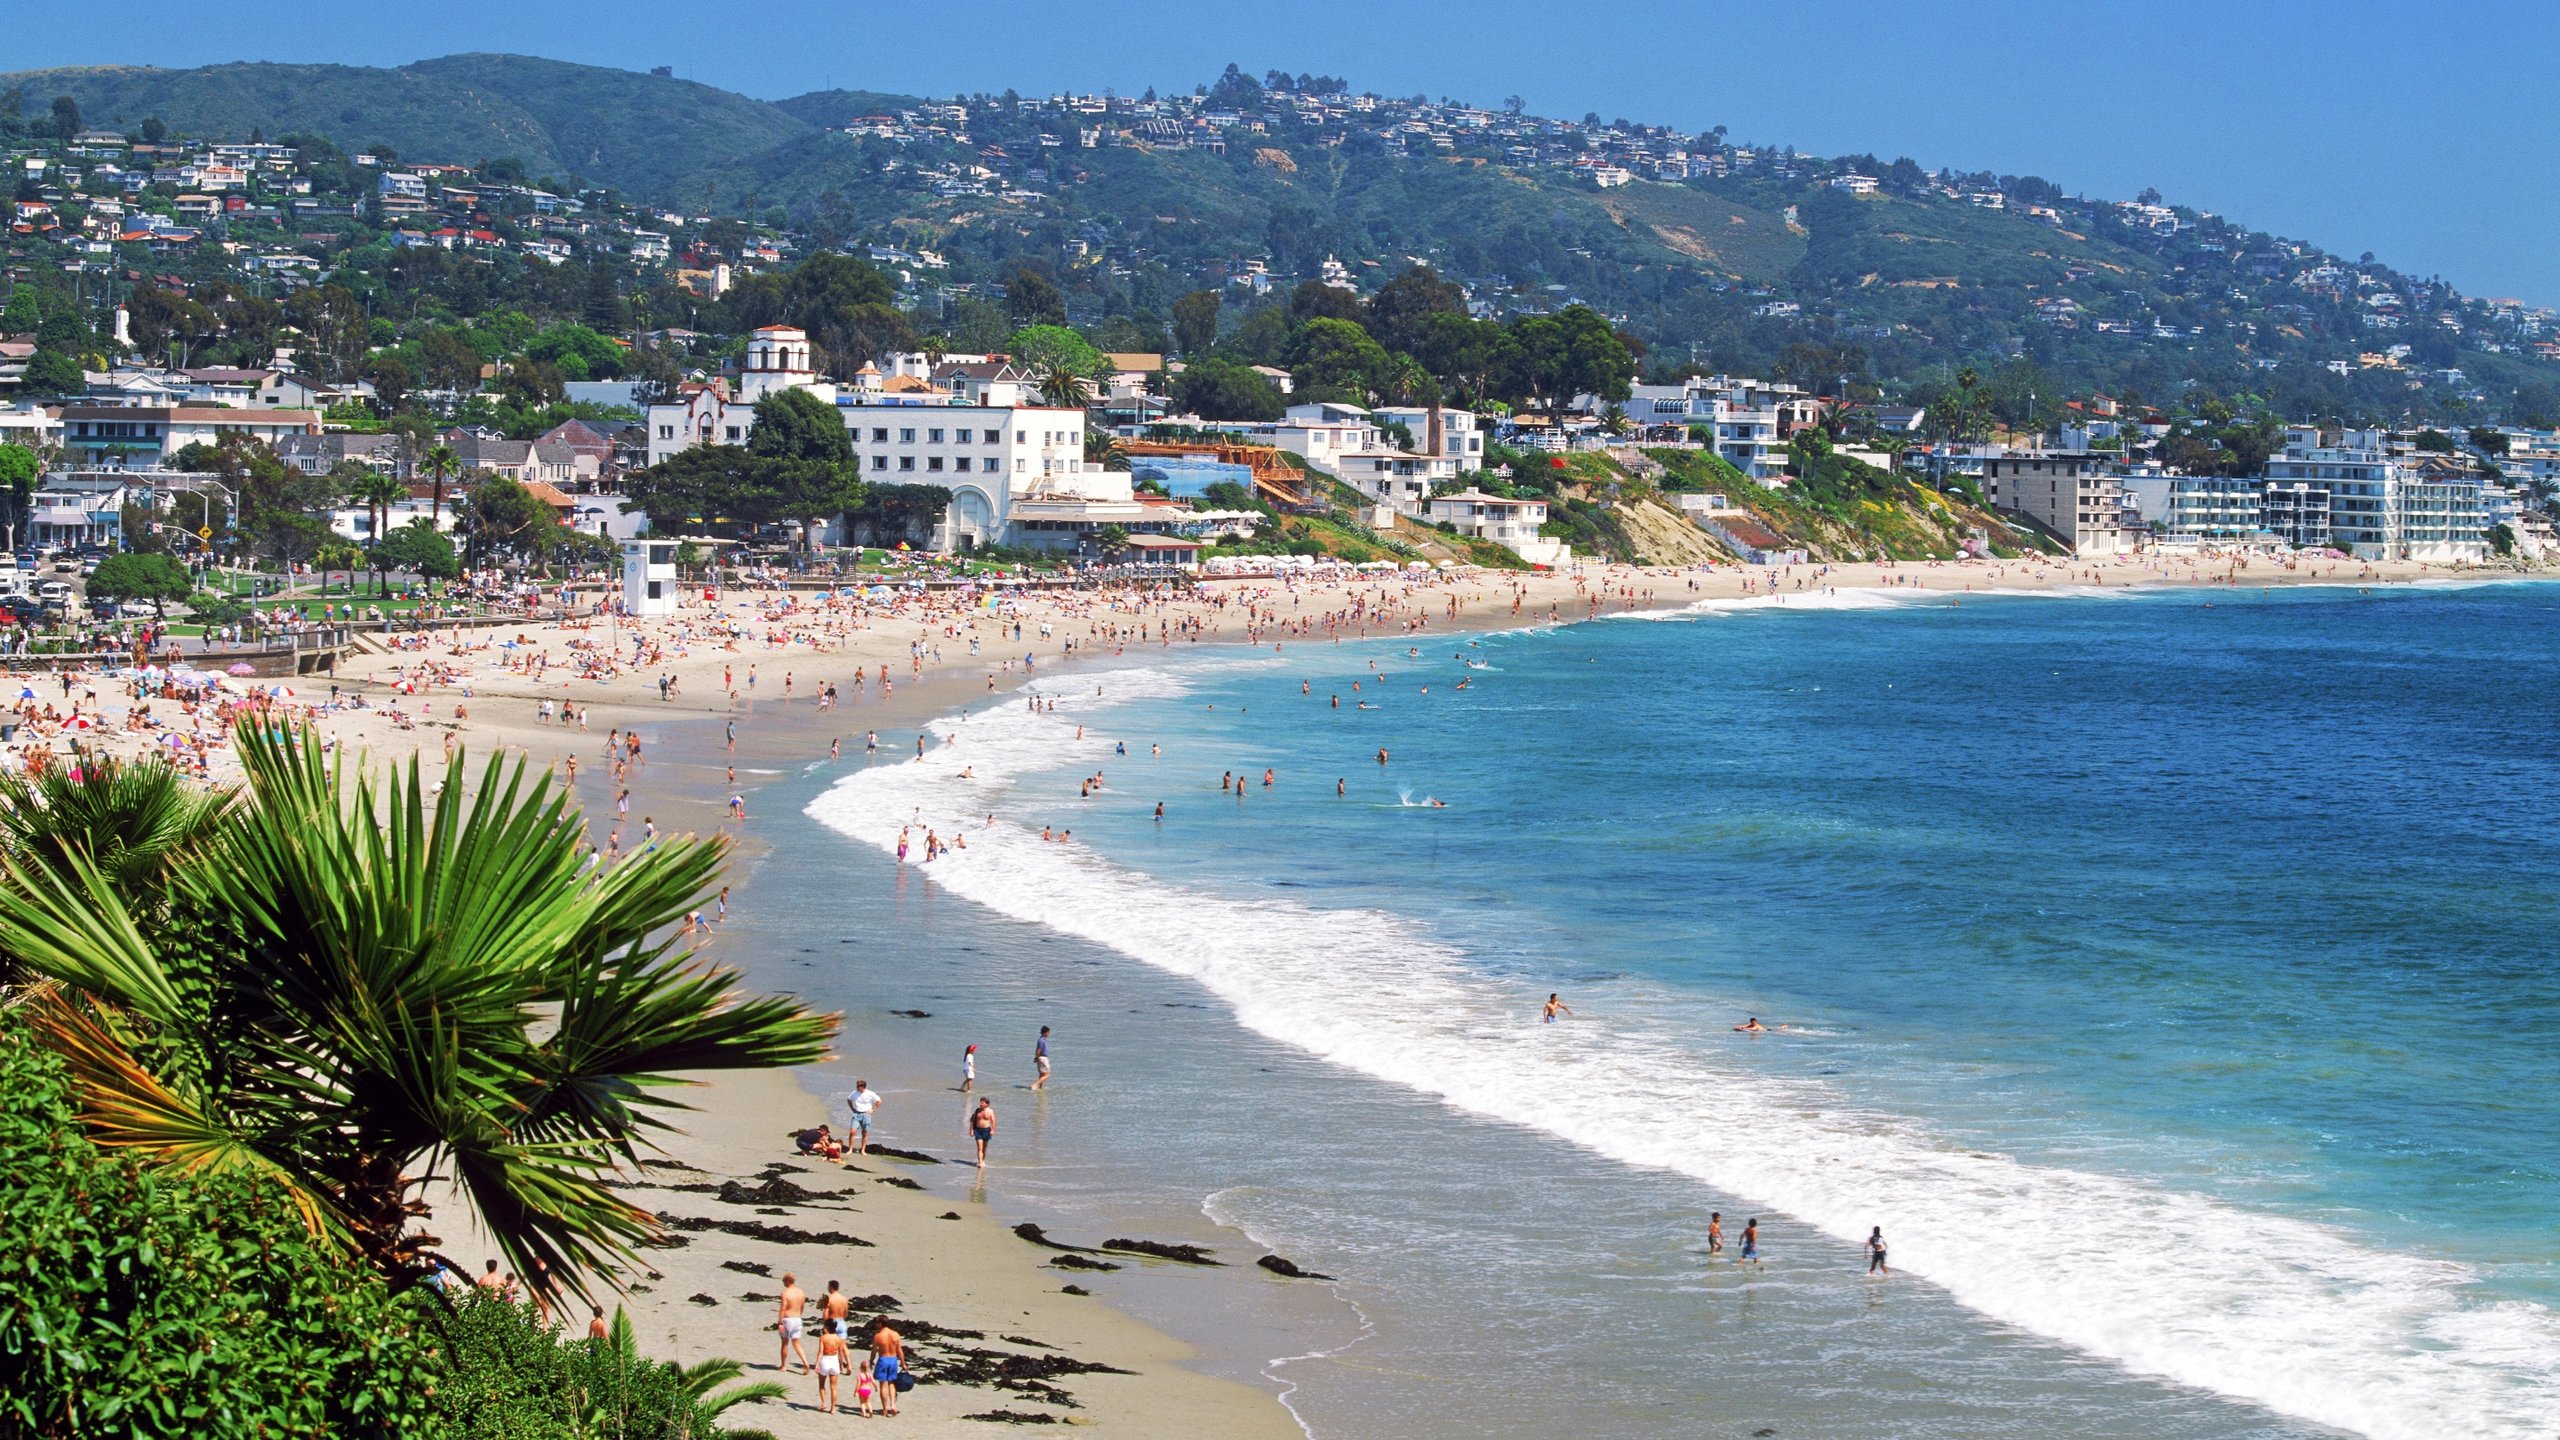 Visit Laguna Beach: 2022 Travel Guide for Laguna Beach, California